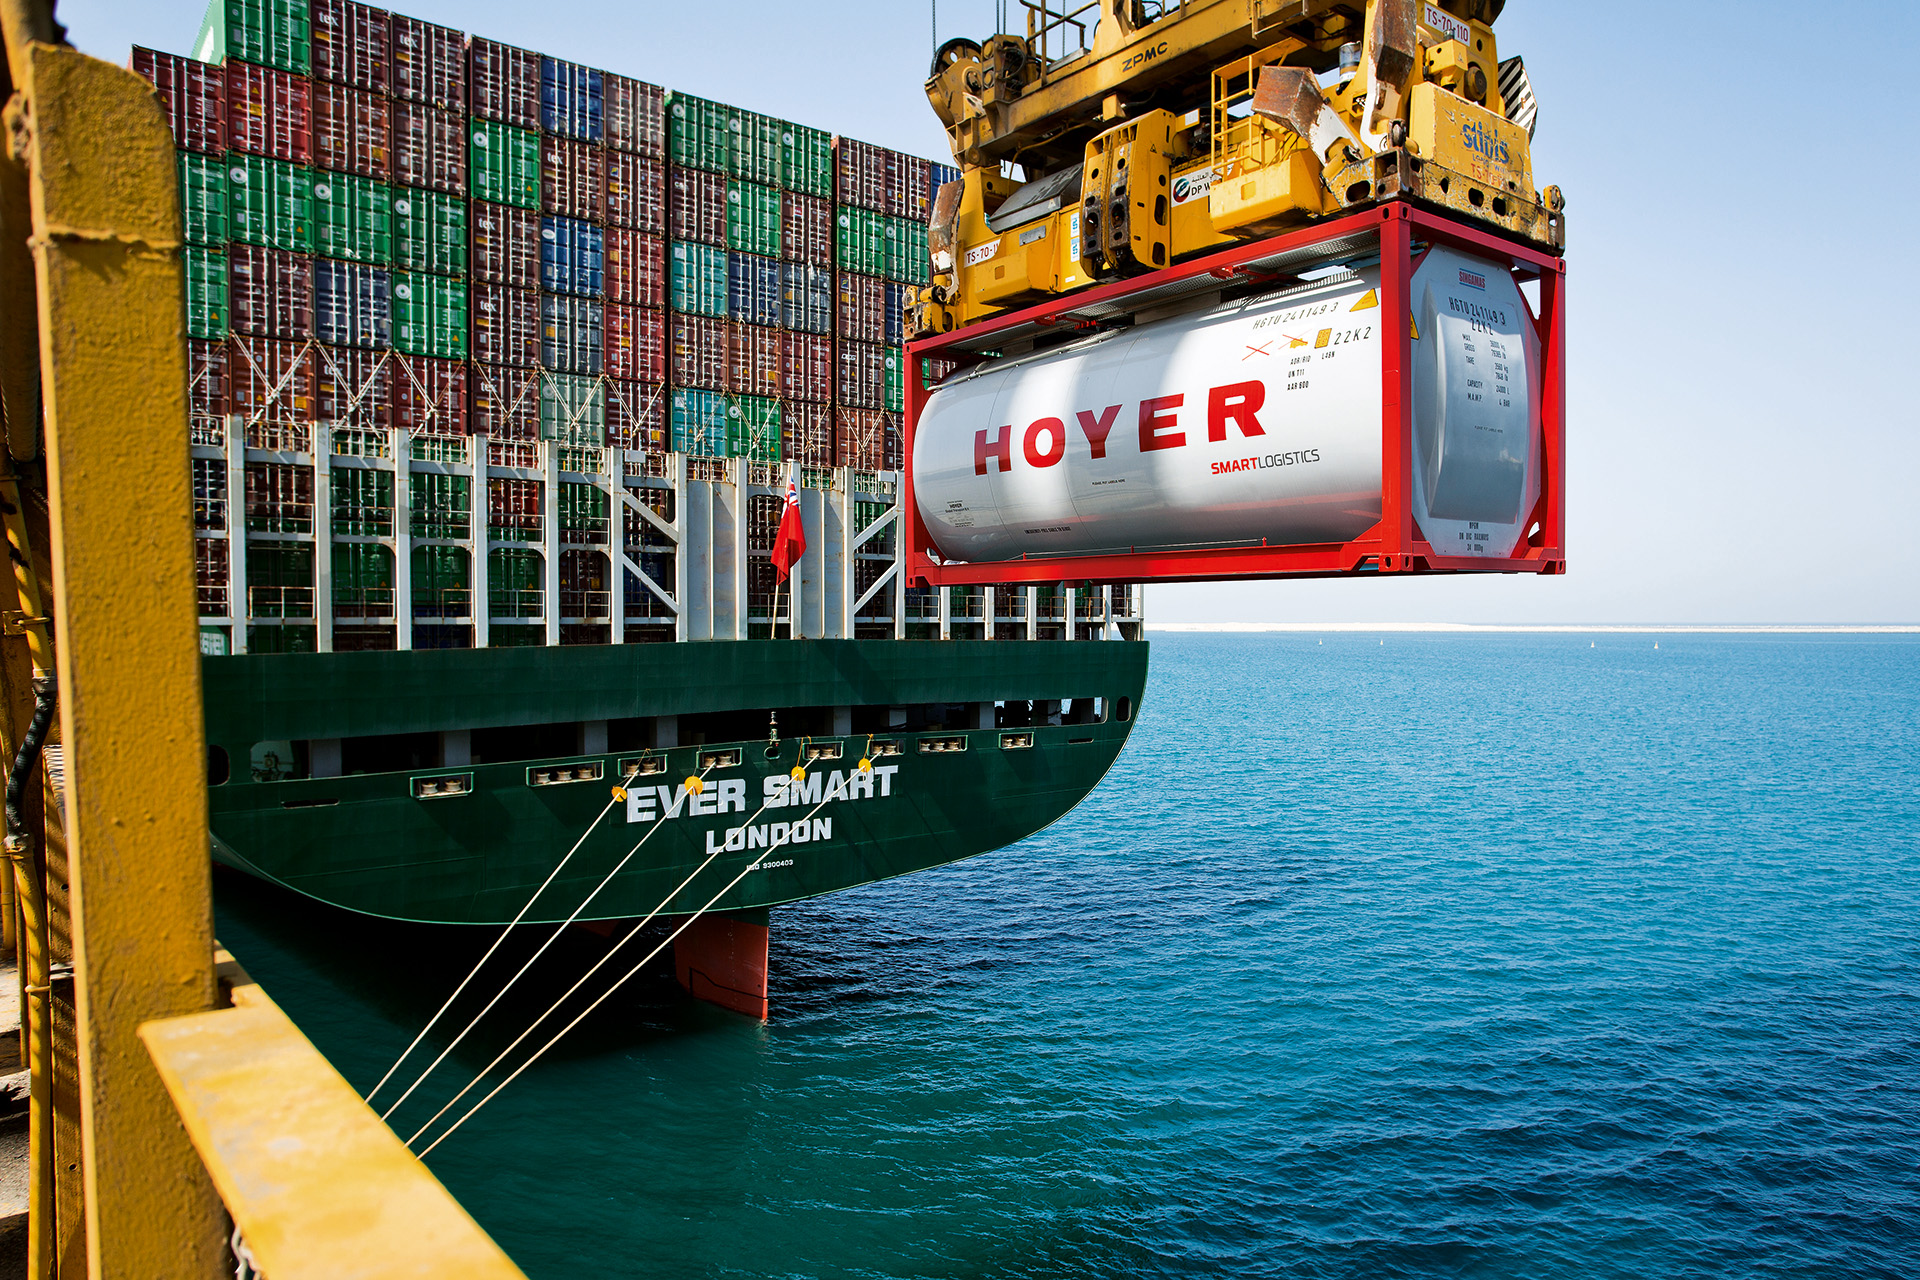 HOYER Container smart logistics an einem Kran ueber dem Meer am Hafen mit Schiff im Hintergrund